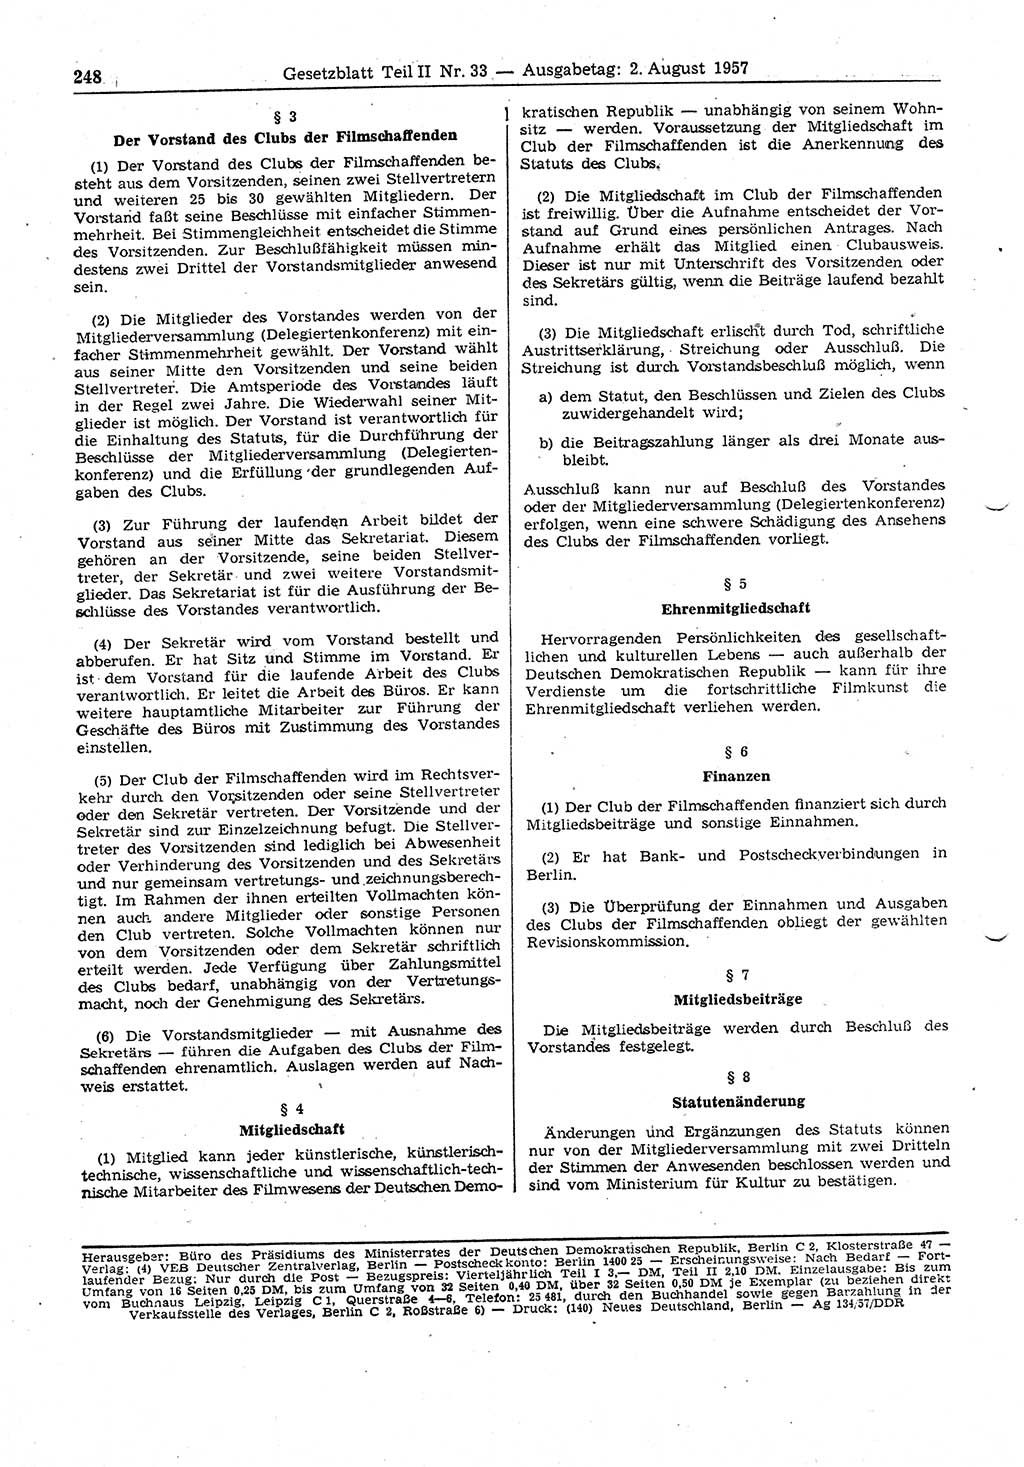 Gesetzblatt (GBl.) der Deutschen Demokratischen Republik (DDR) Teil ⅠⅠ 1957, Seite 248 (GBl. DDR ⅠⅠ 1957, S. 248)